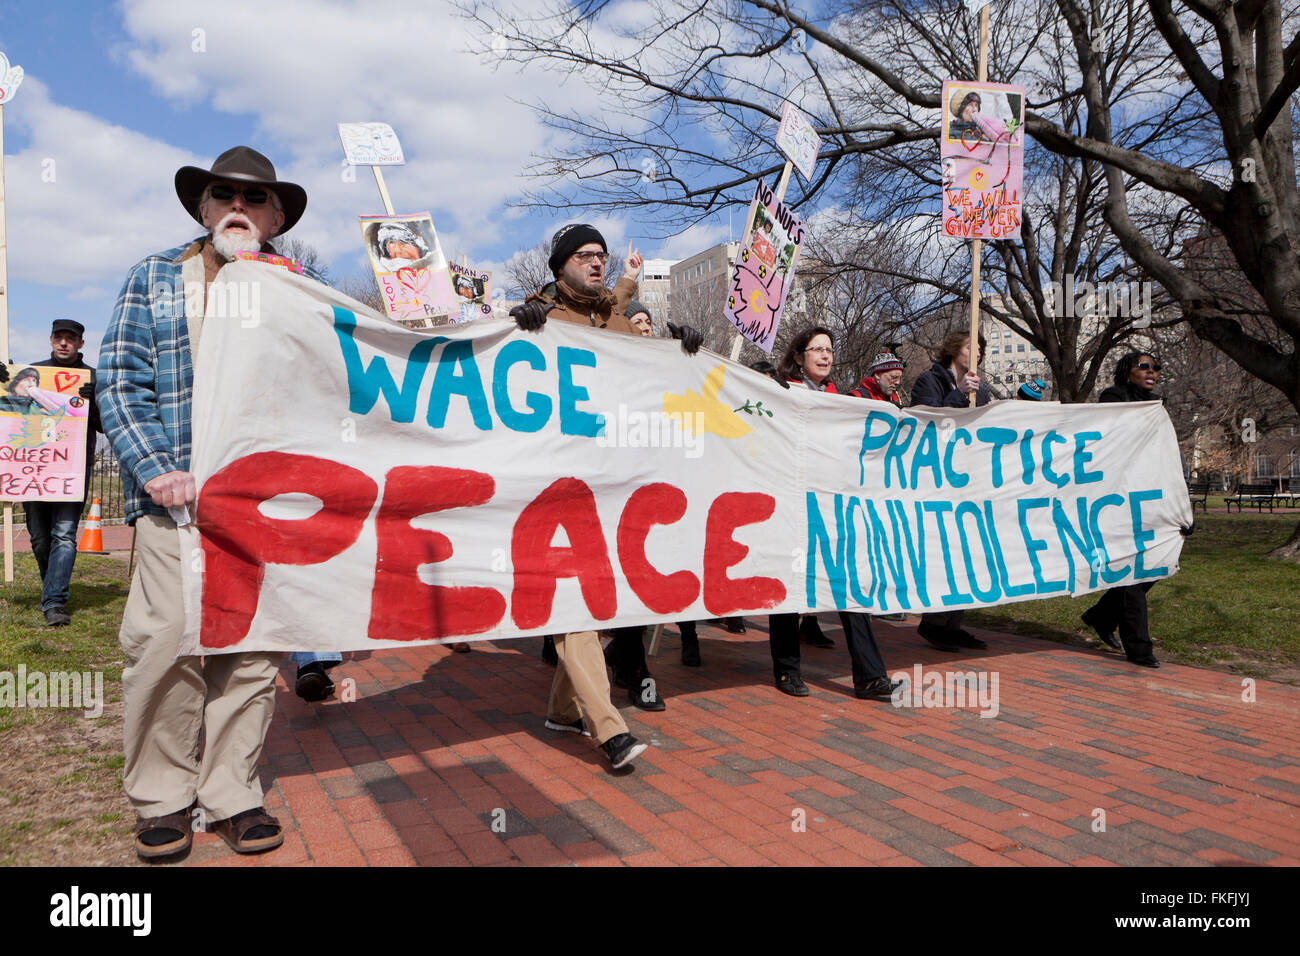 27 gennaio 2016 - Washington DC, Stati Uniti d'America: pacifisti di marzo in memoria di Concepcion Picciotto Foto Stock